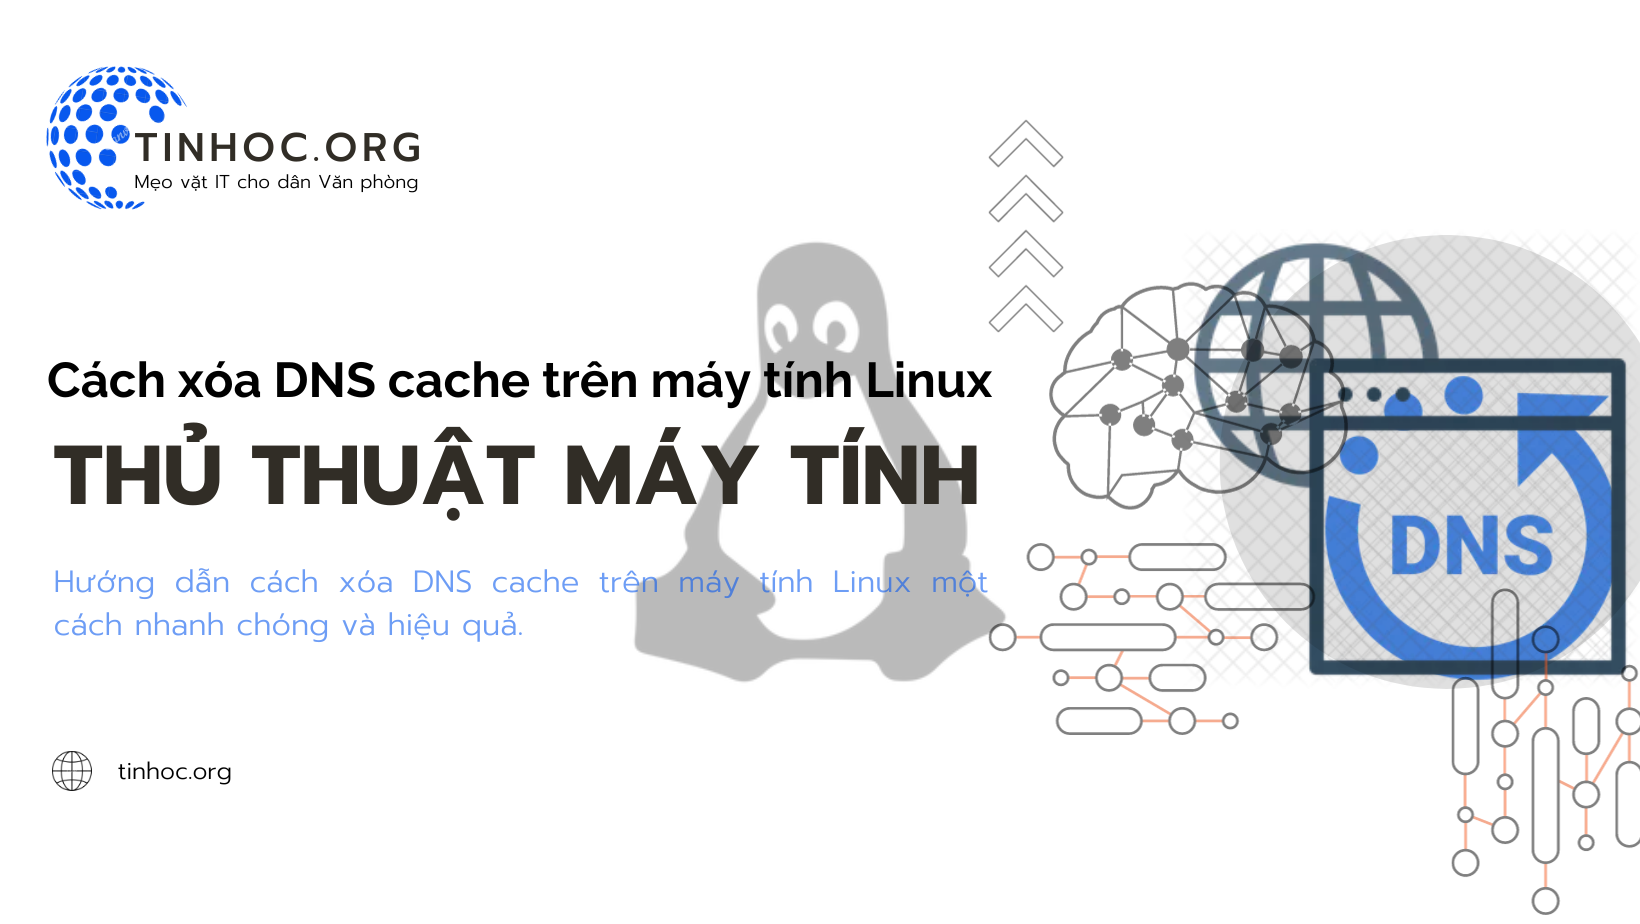 Hướng dẫn chi tiết quy trình xóa cache DNS trên hệ điều hành Linux một cách đơn giản và nhanh chóng, giúp khắc phục các vấn đề về internet.